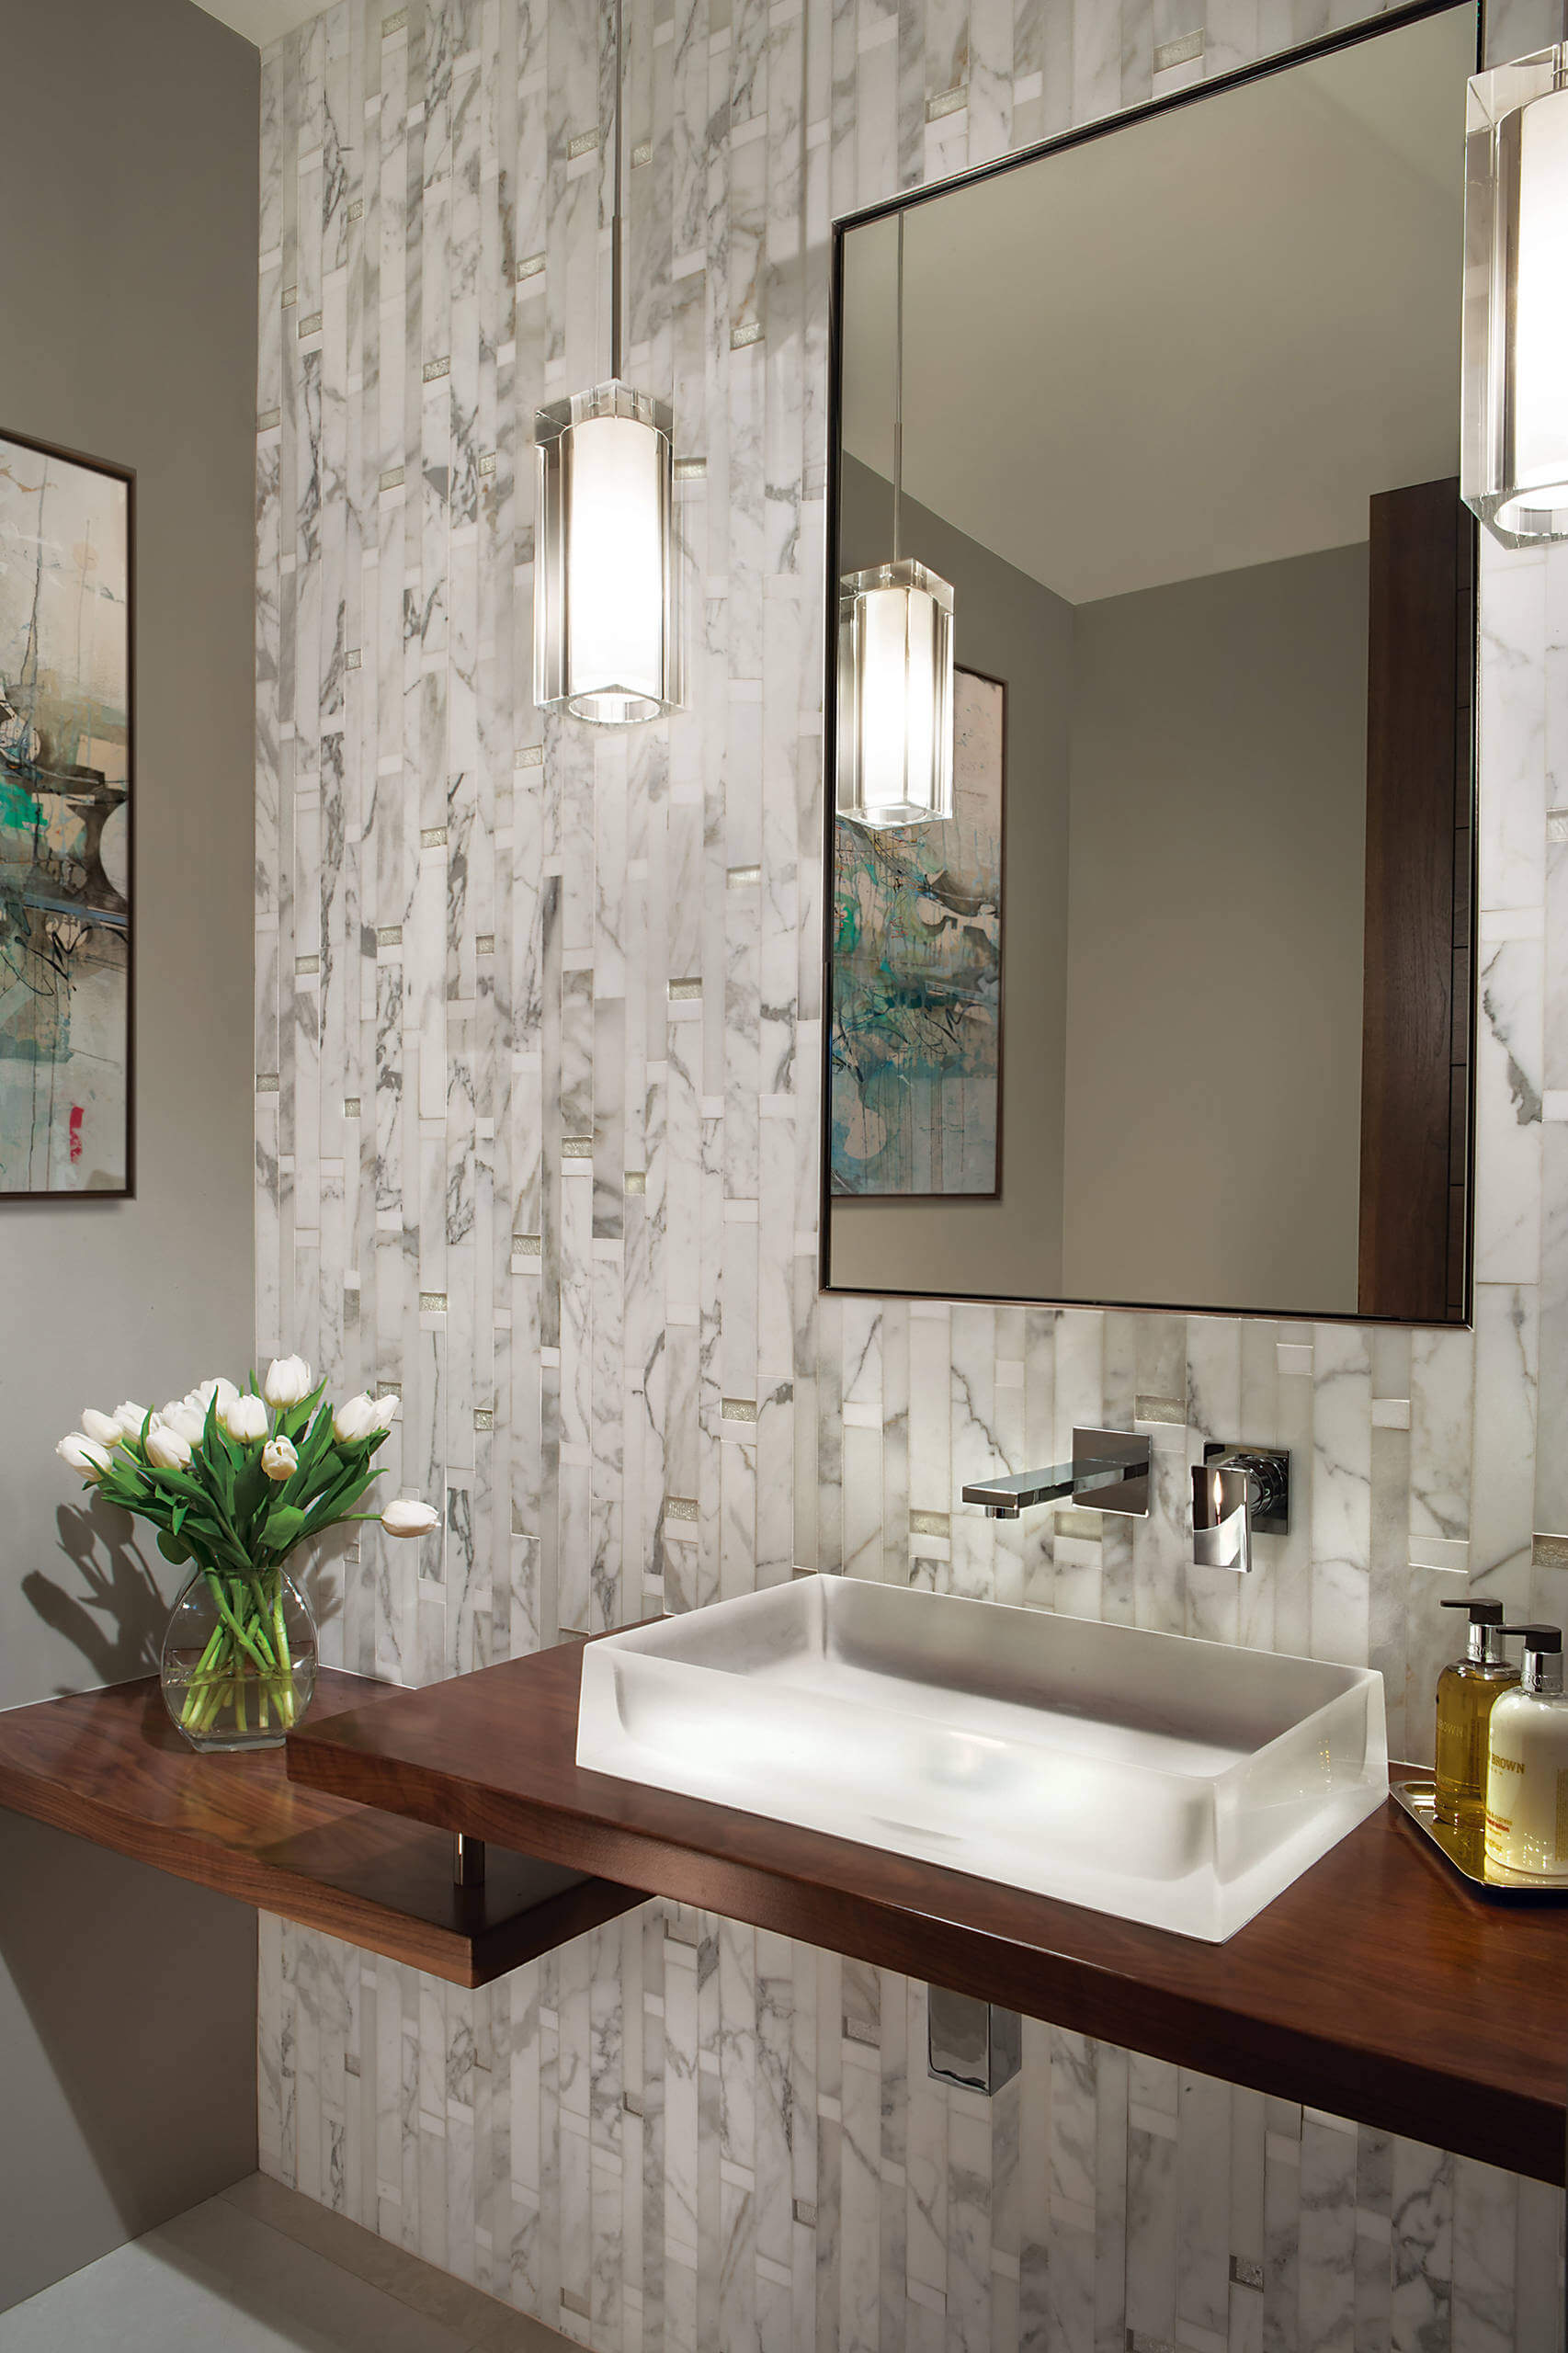 2 contemporary bathroom faucet designs